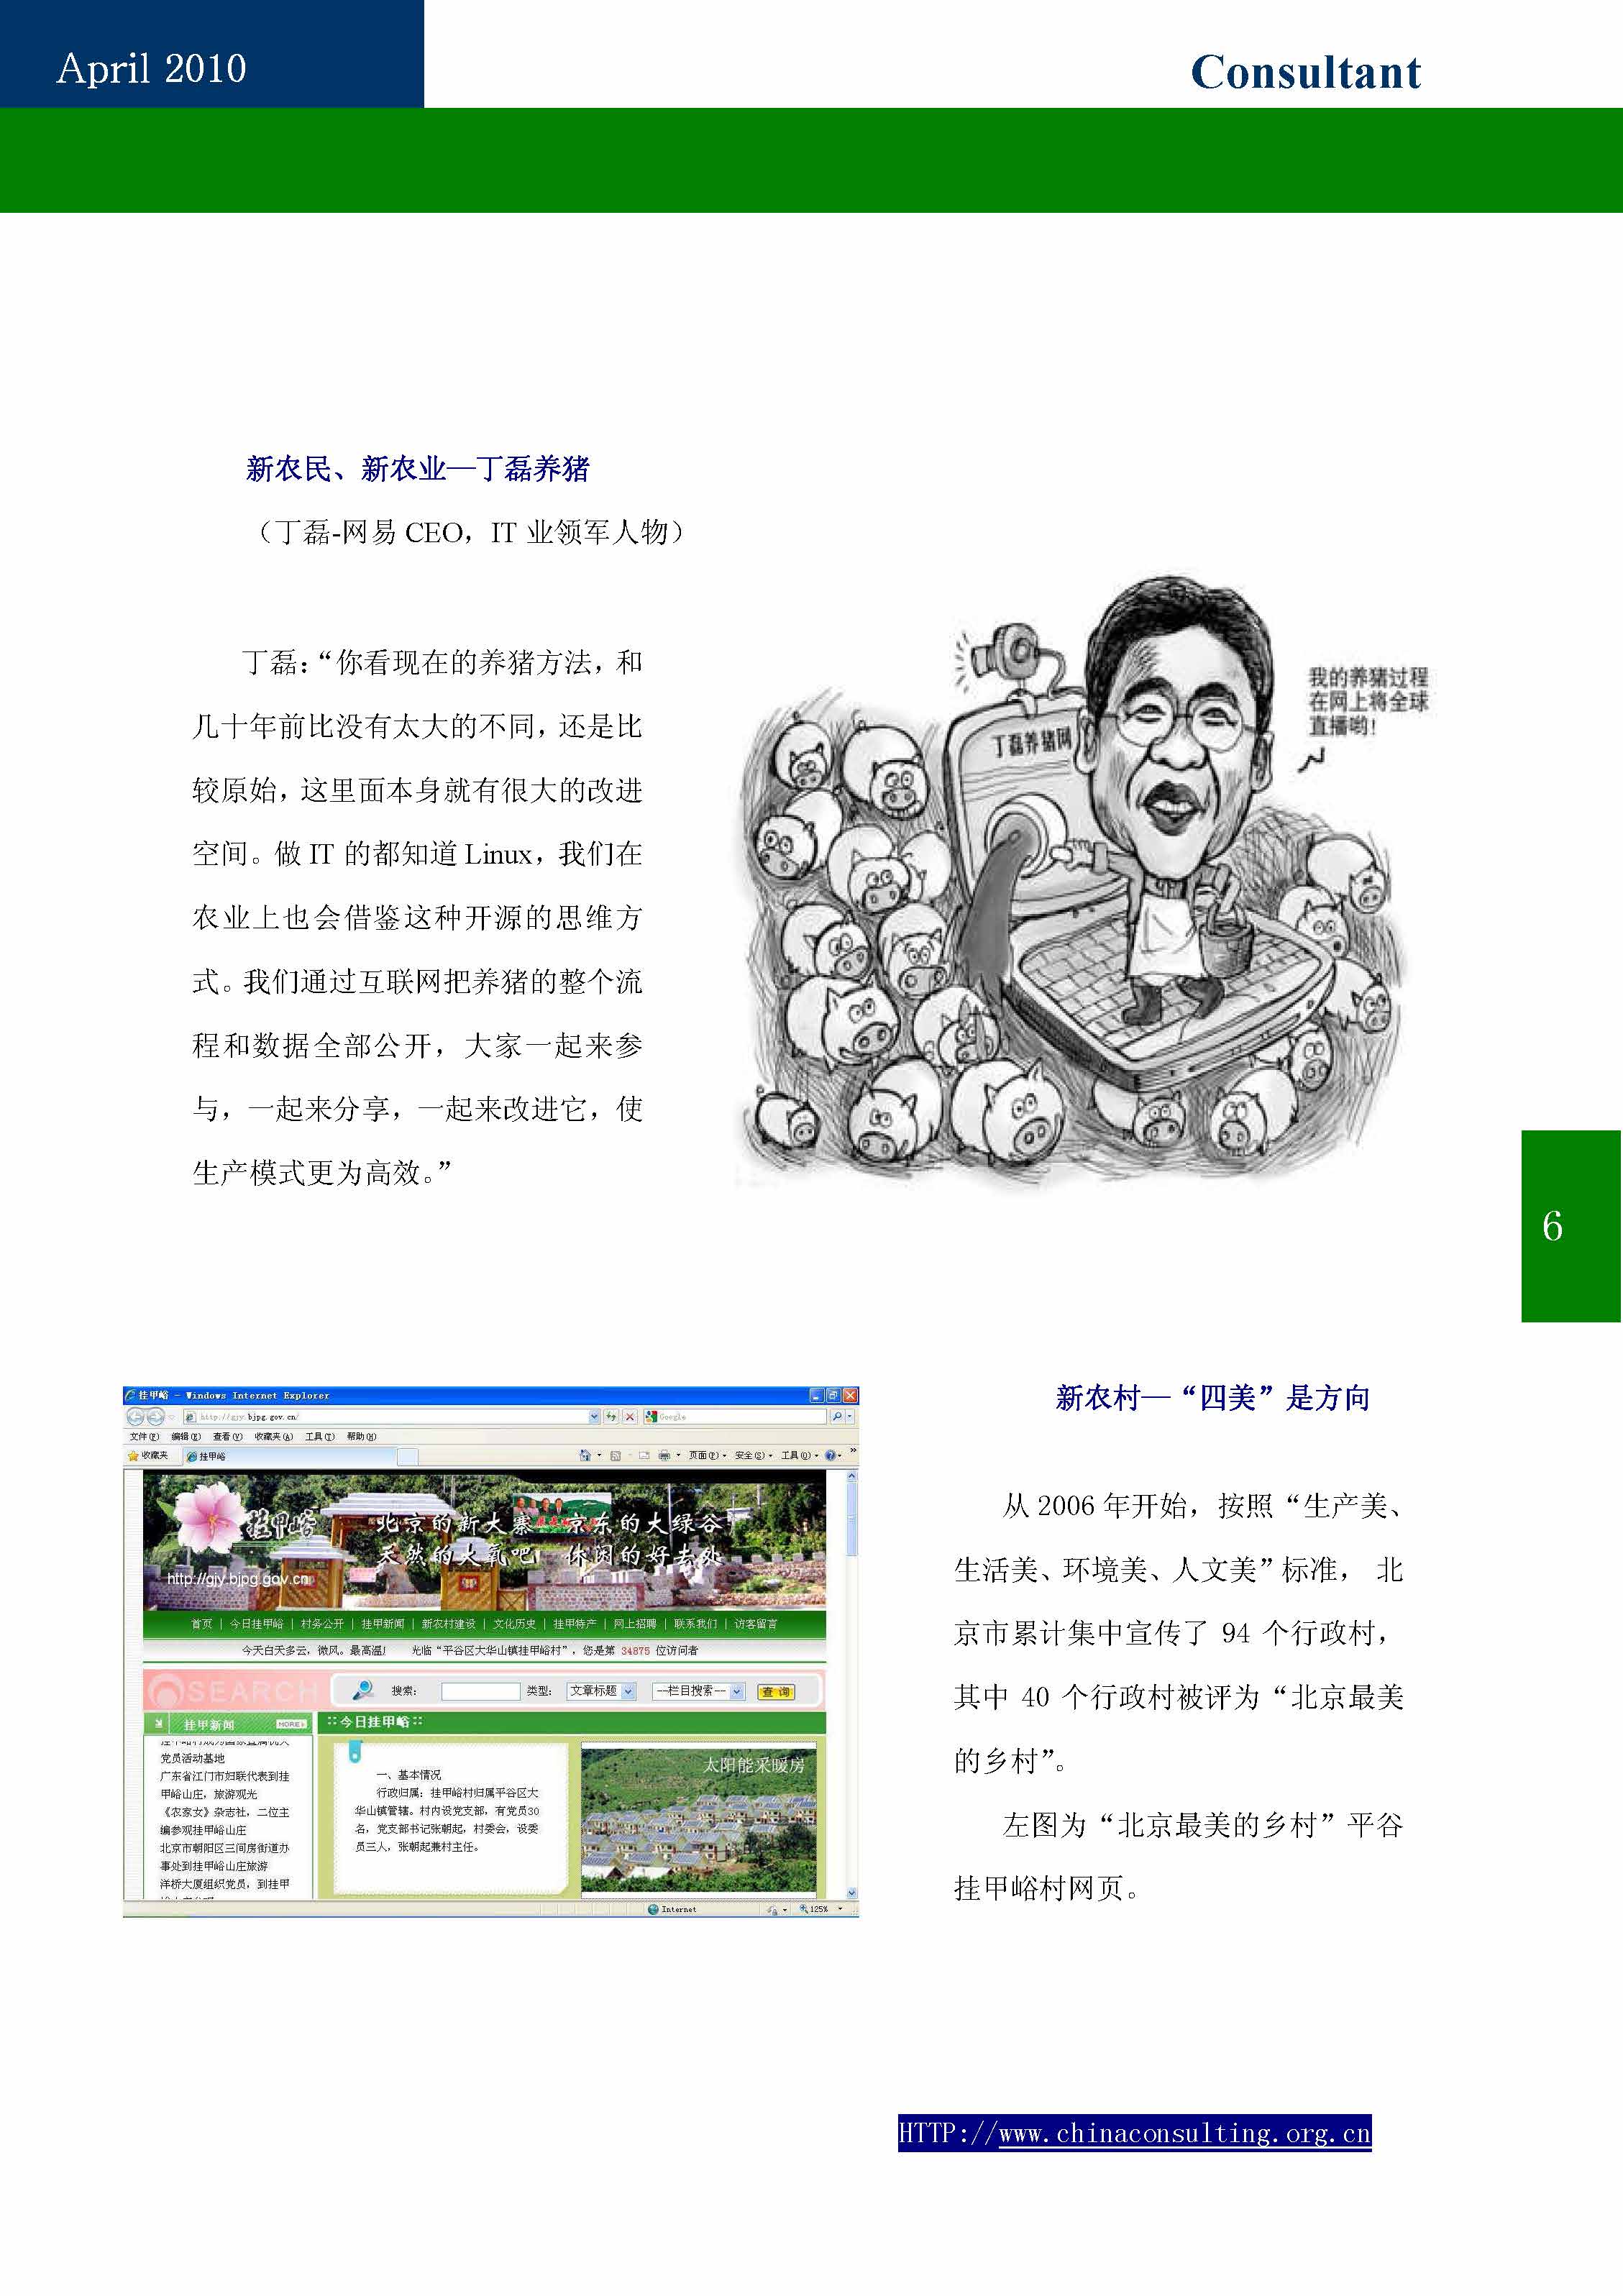 9中国科技咨询协会第九期会刊_页面_08.jpg